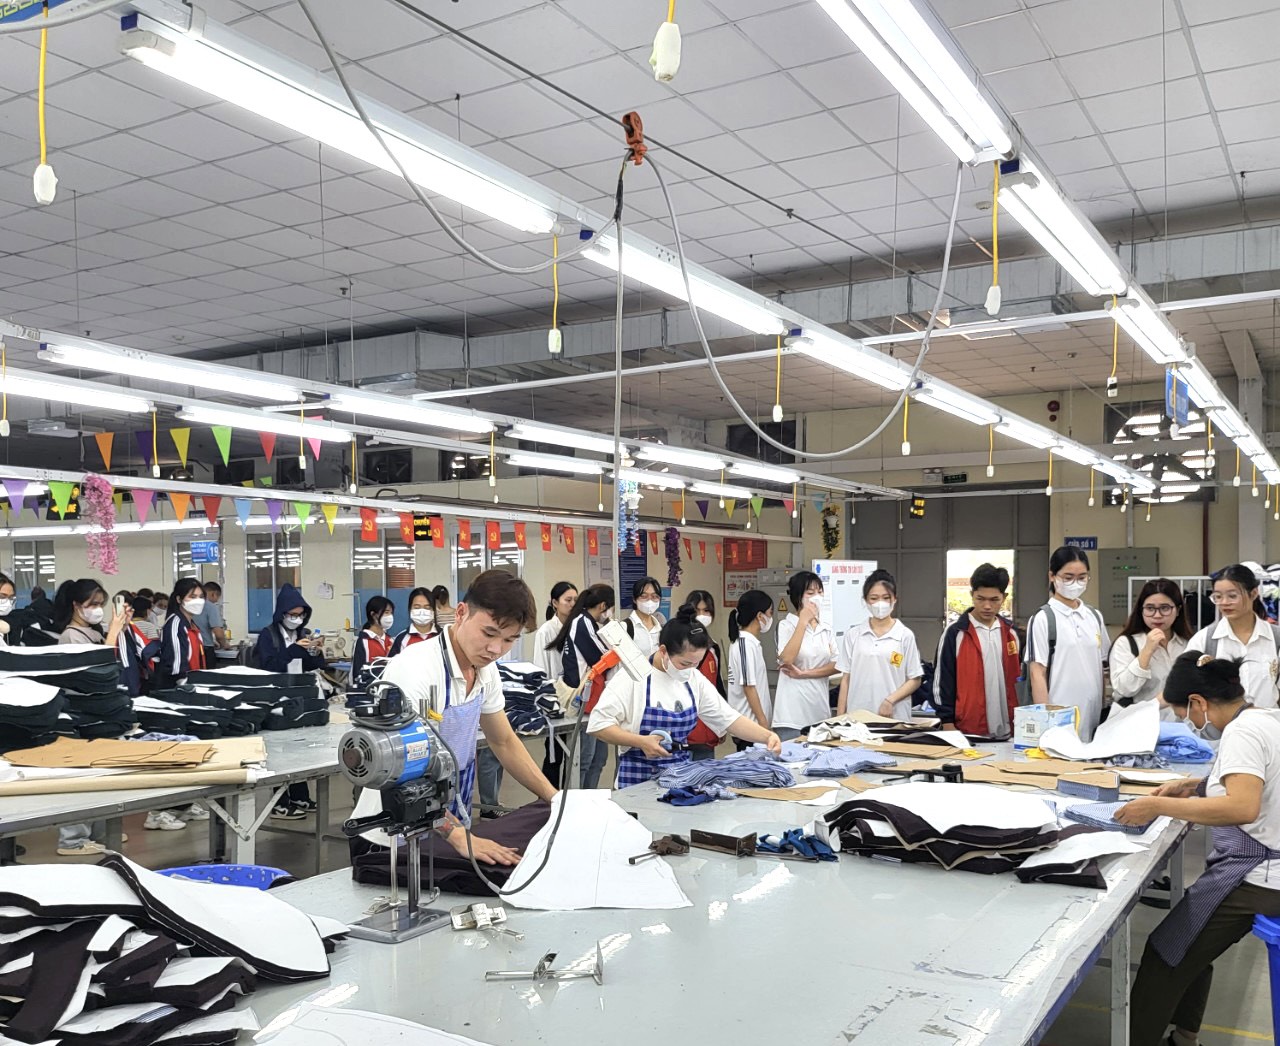 Tham quan doanh nghiệp – Cơ hội được tiếp cận giữa các doanh nghiệp và sinh viên K17 – Khoa CNM&TKTT - Trường Đại học Công nghiệp Hà Nội